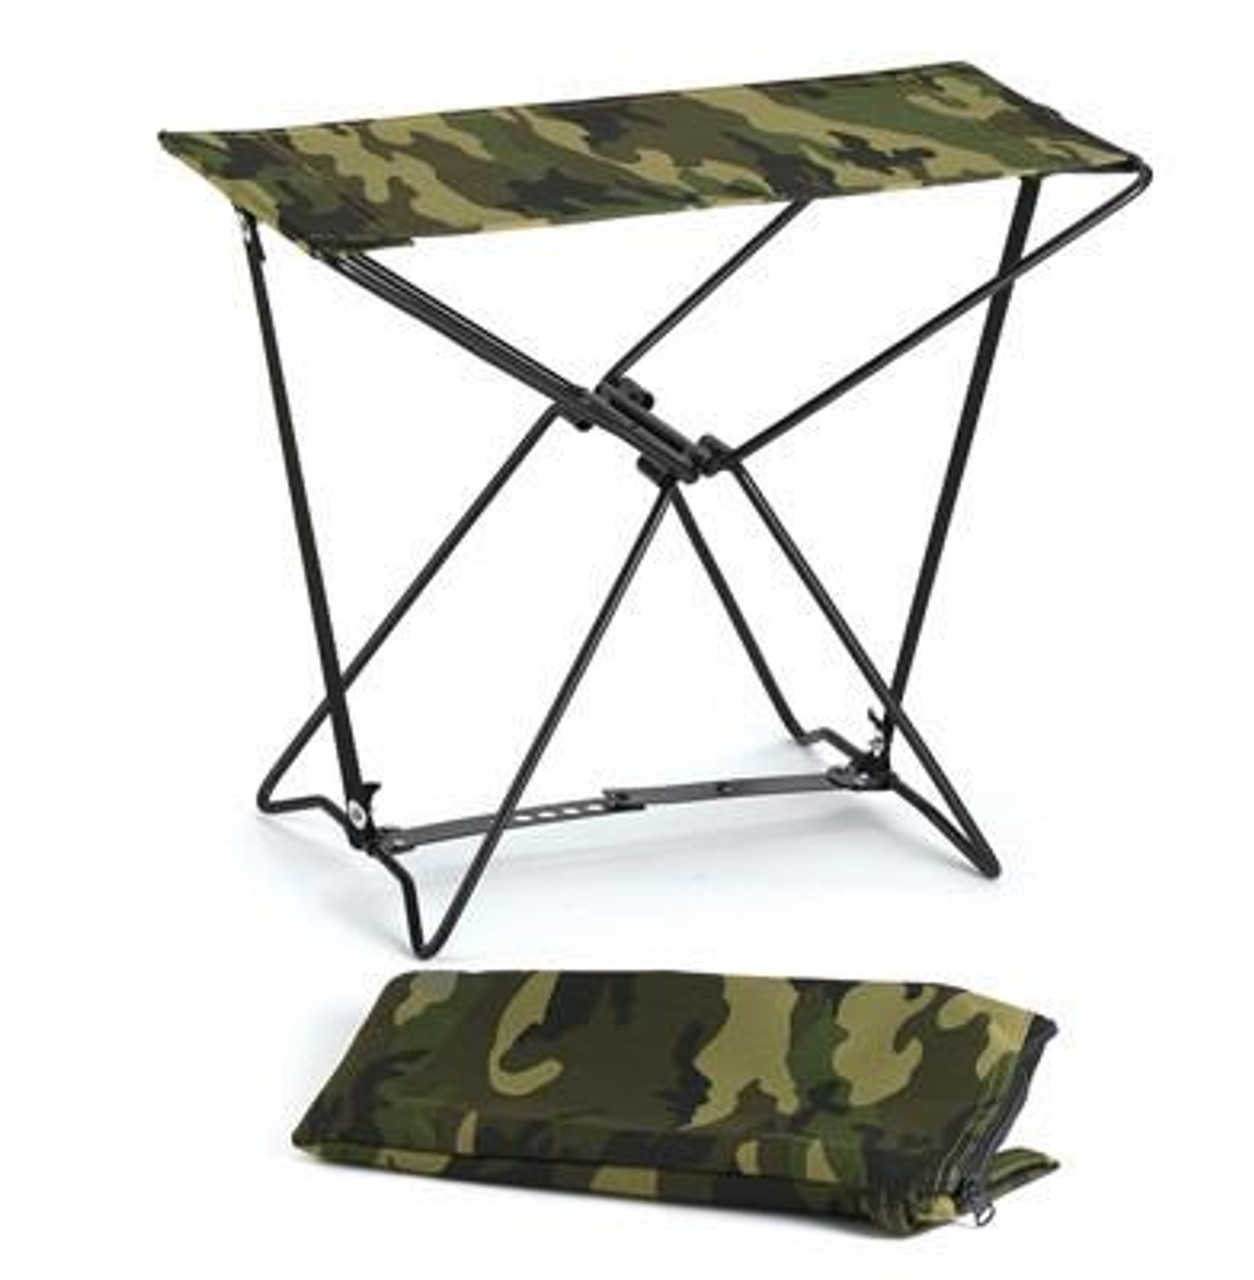 mini folding stool